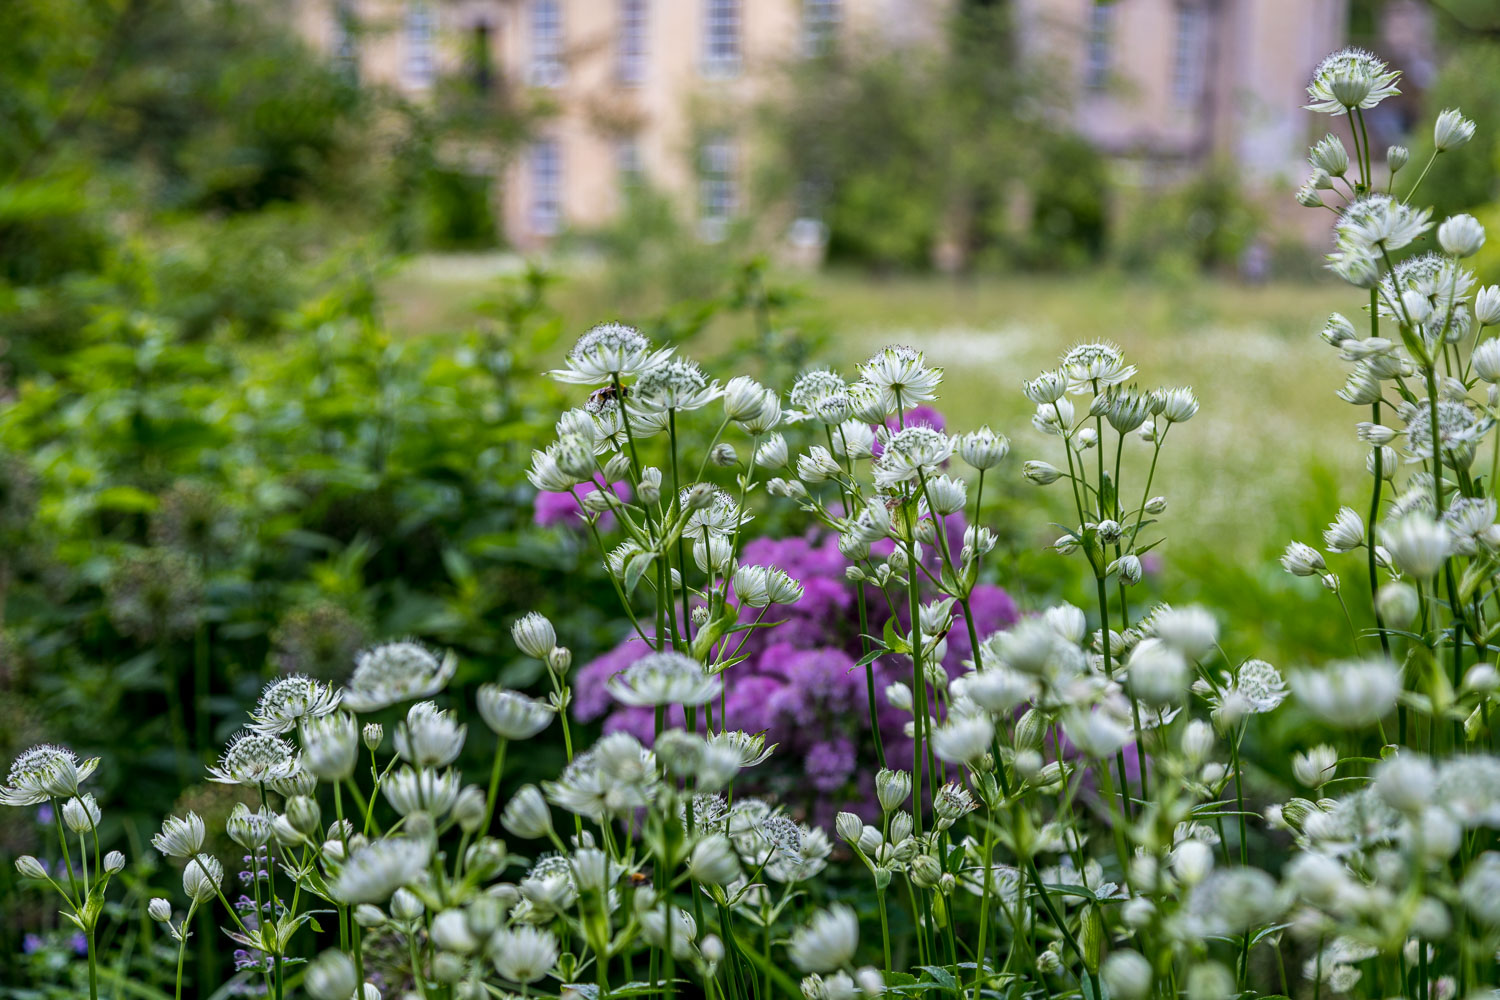 Nunnington Hall garden